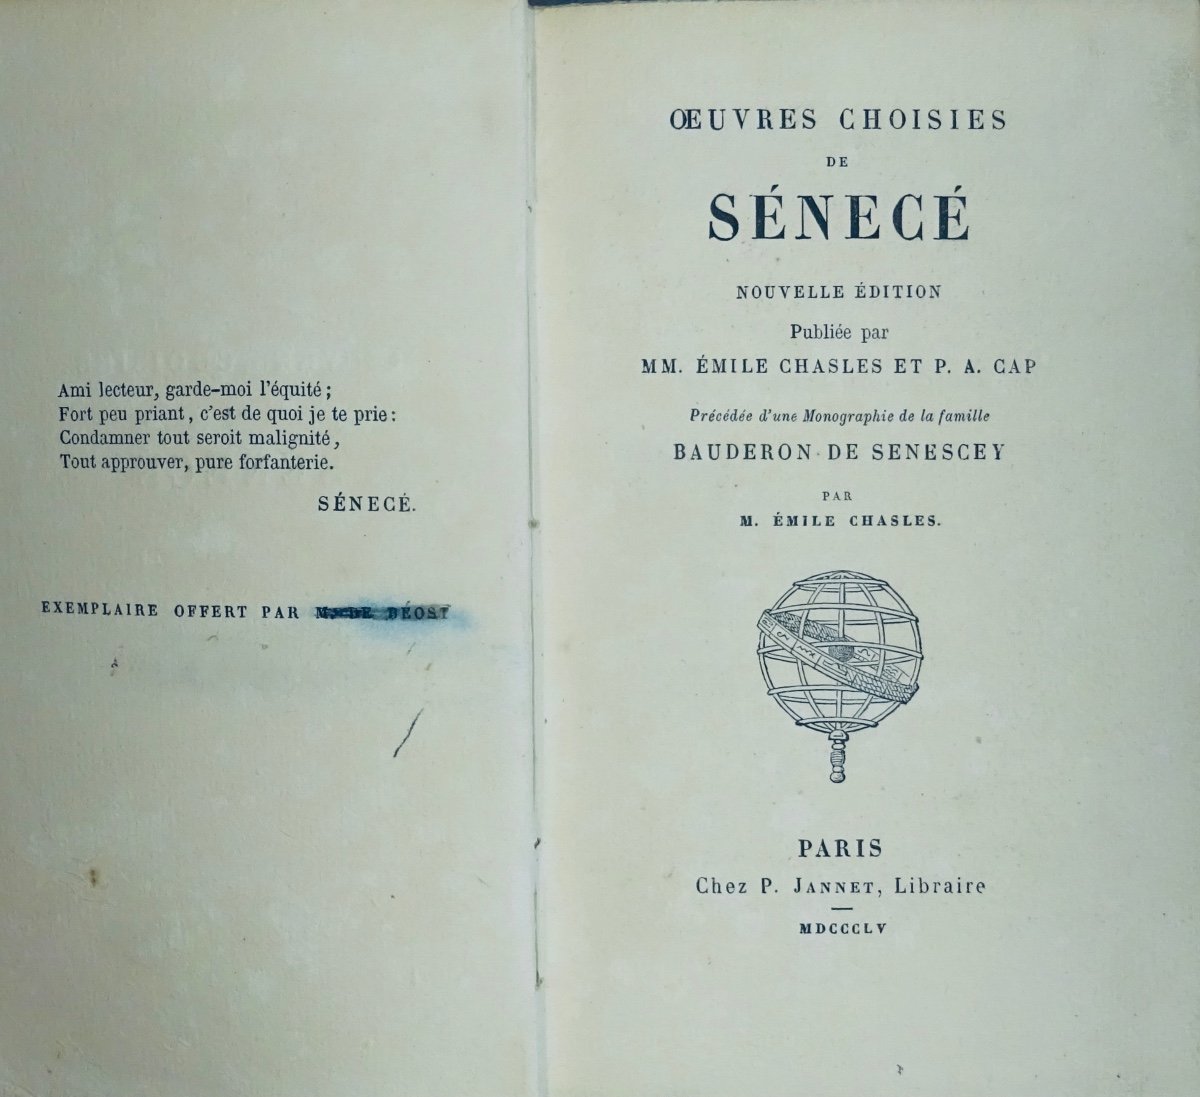 Senecé - Selected Works Of Sénecé. Jannet, 1855, In Publisher's Cardboard.-photo-1